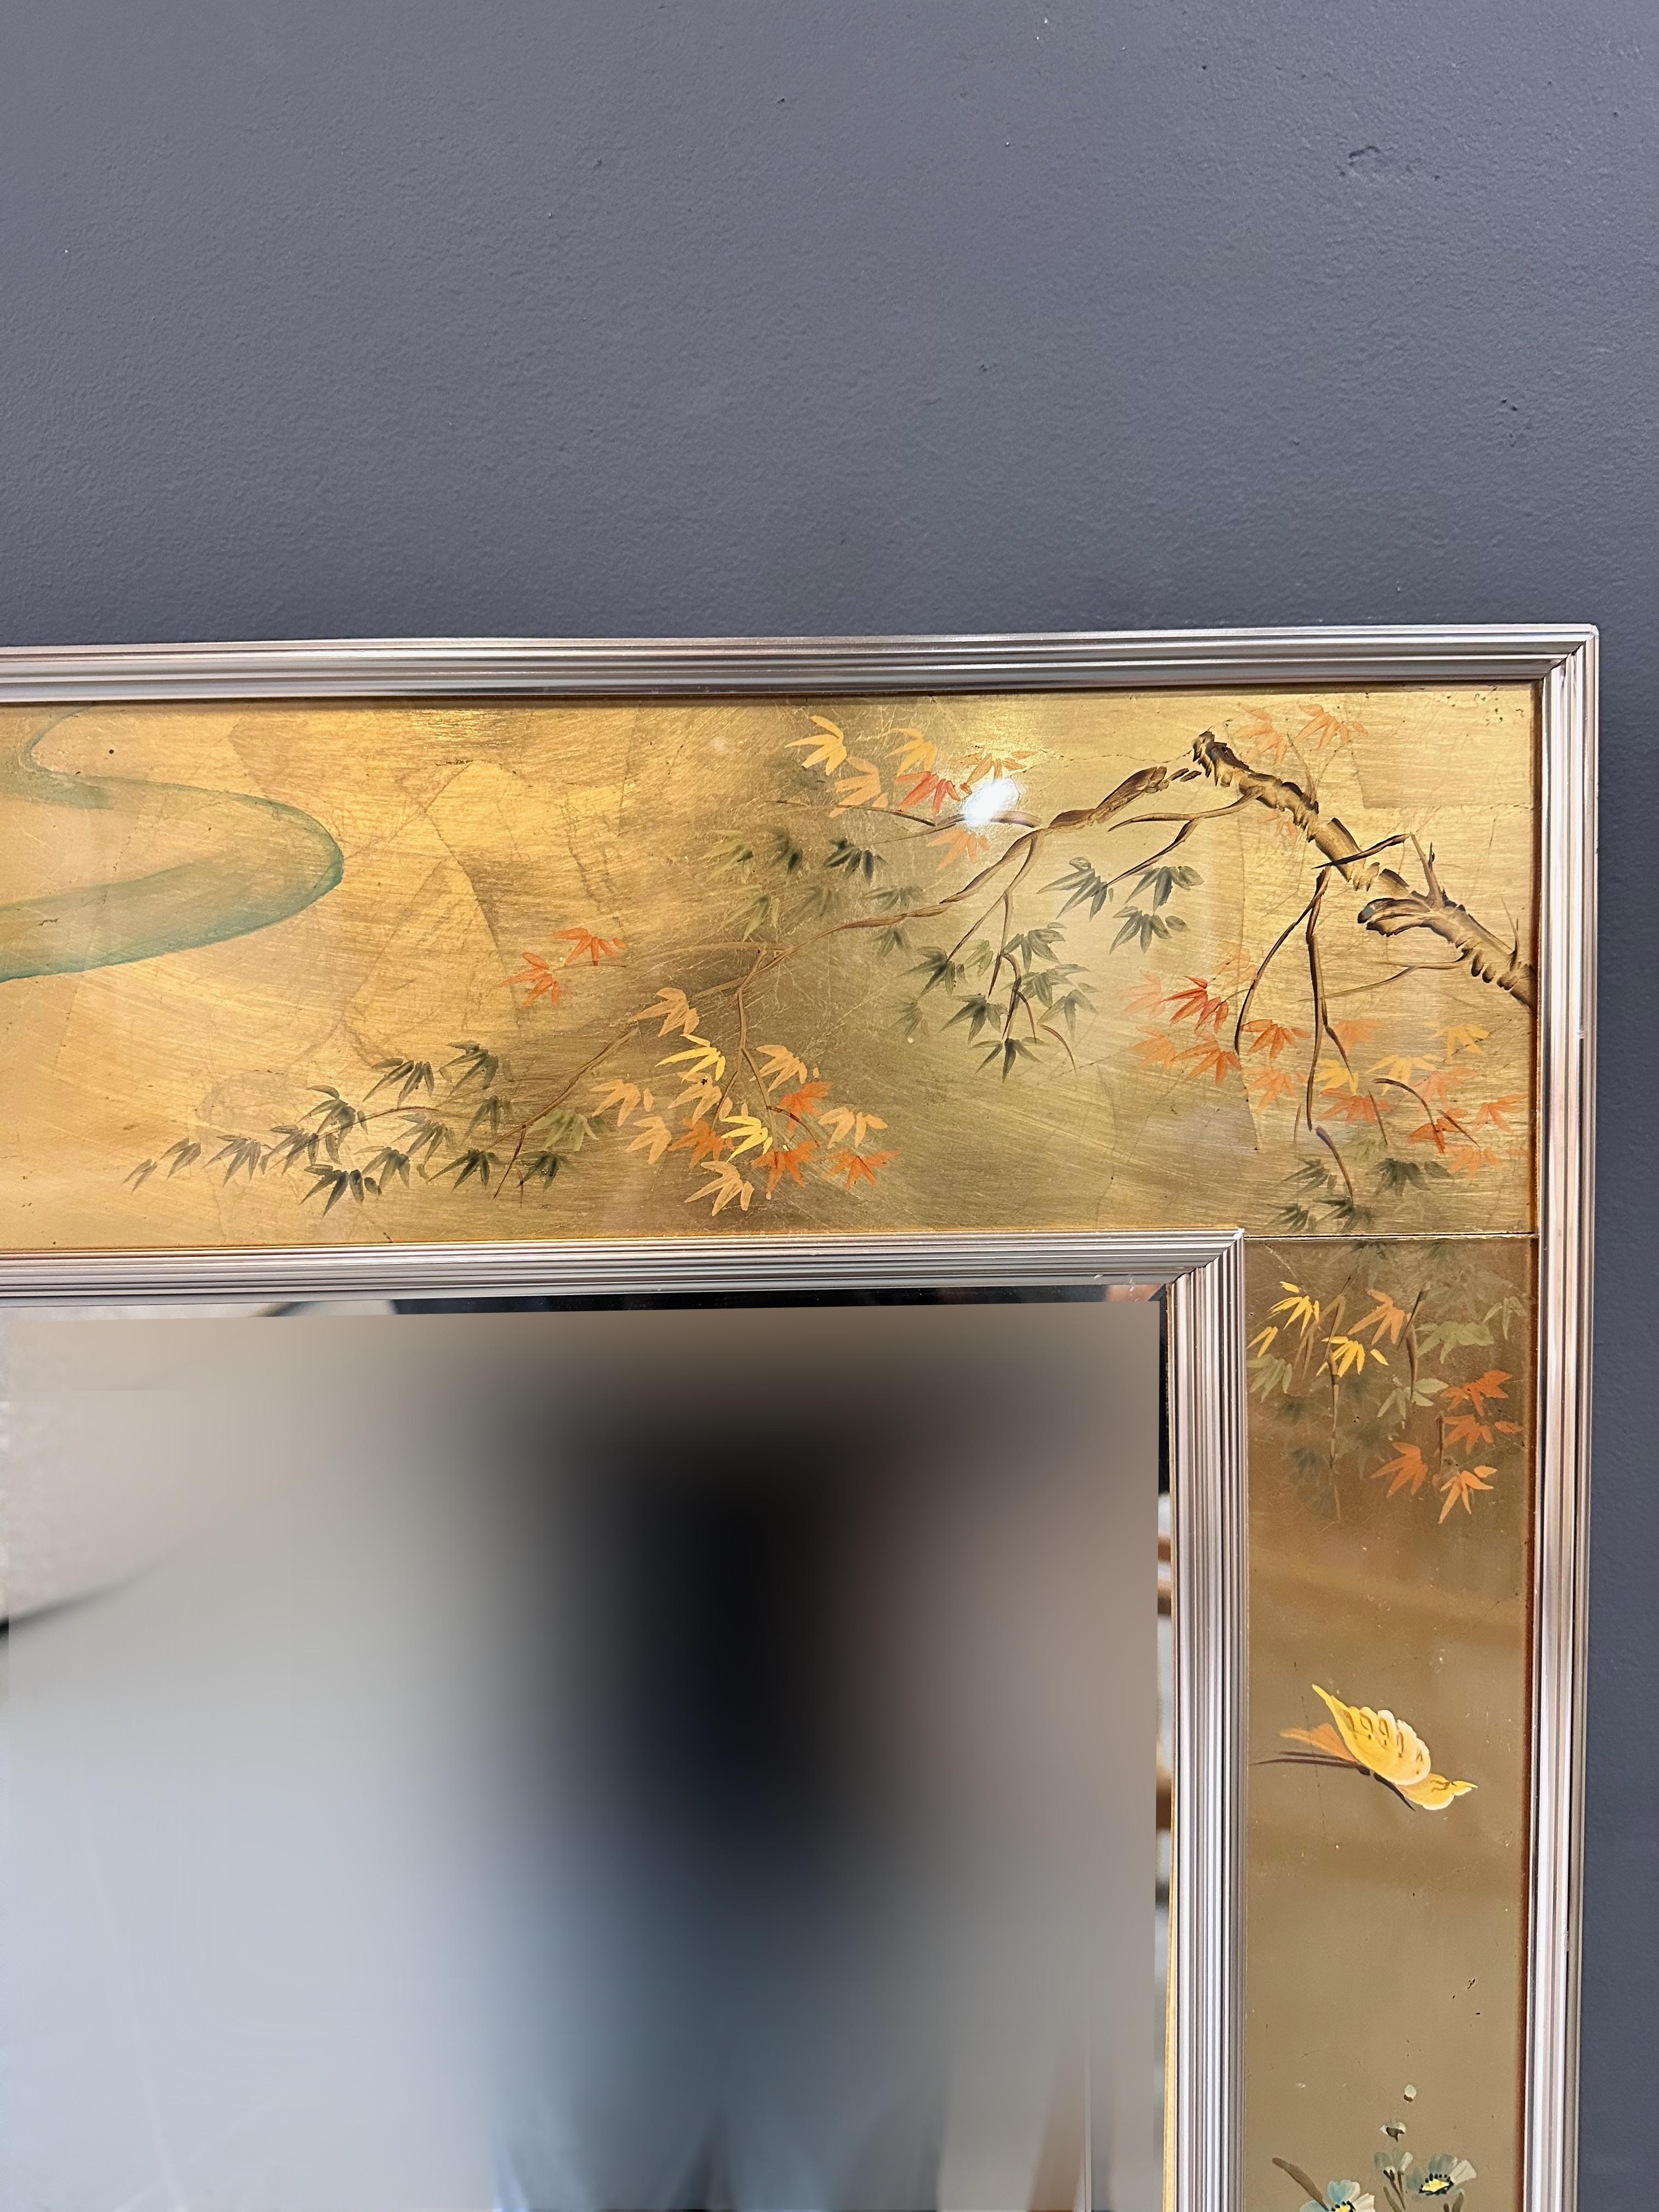 Joli miroir vertical rectangulaire de Labarge, avec un cadre décoré de Chinoiseries, un fond doré et un décor poétique d'oiseaux et de feuillages d'inspiration asiatique. Signé par l'artiste, voir photos